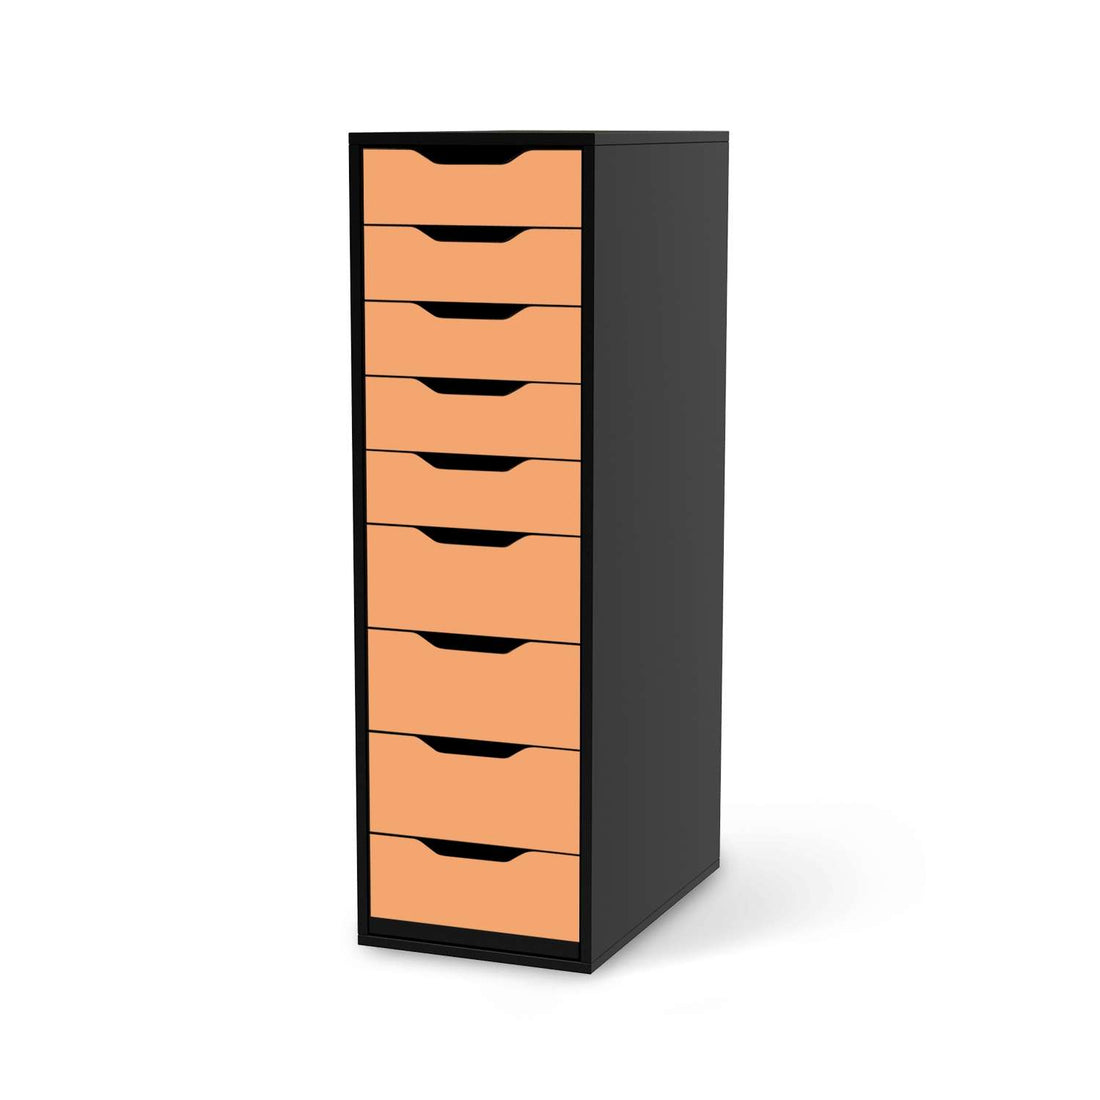 Folie für Möbel Orange Light - IKEA Alex 9 Schubladen - schwarz